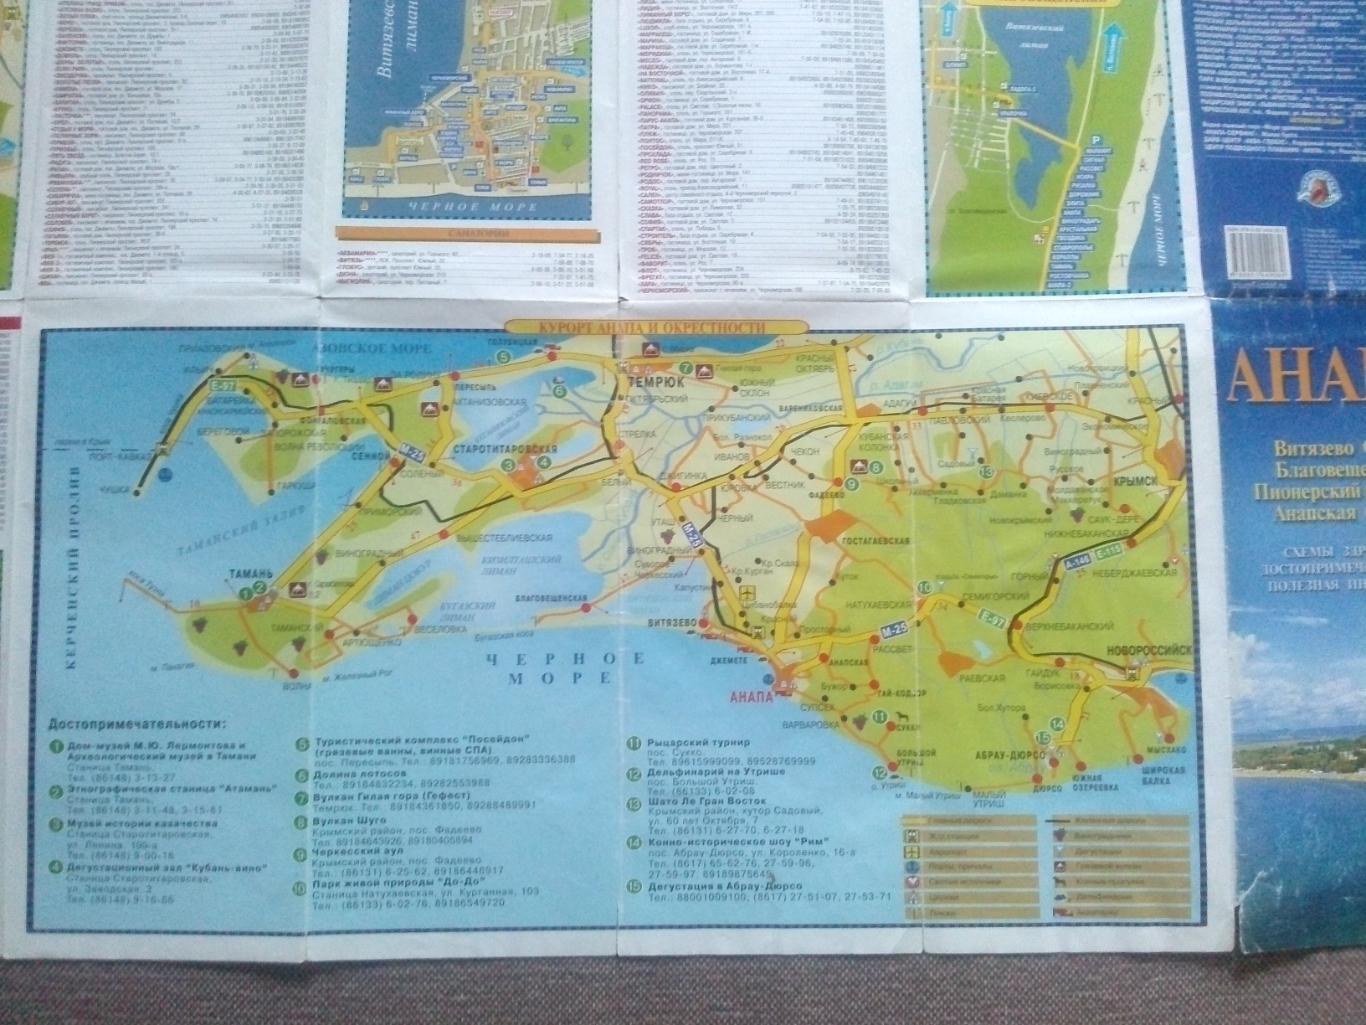 Карта (туристская схема) : Анапа 2013 г. (Черноморское побережье) Черное море 3